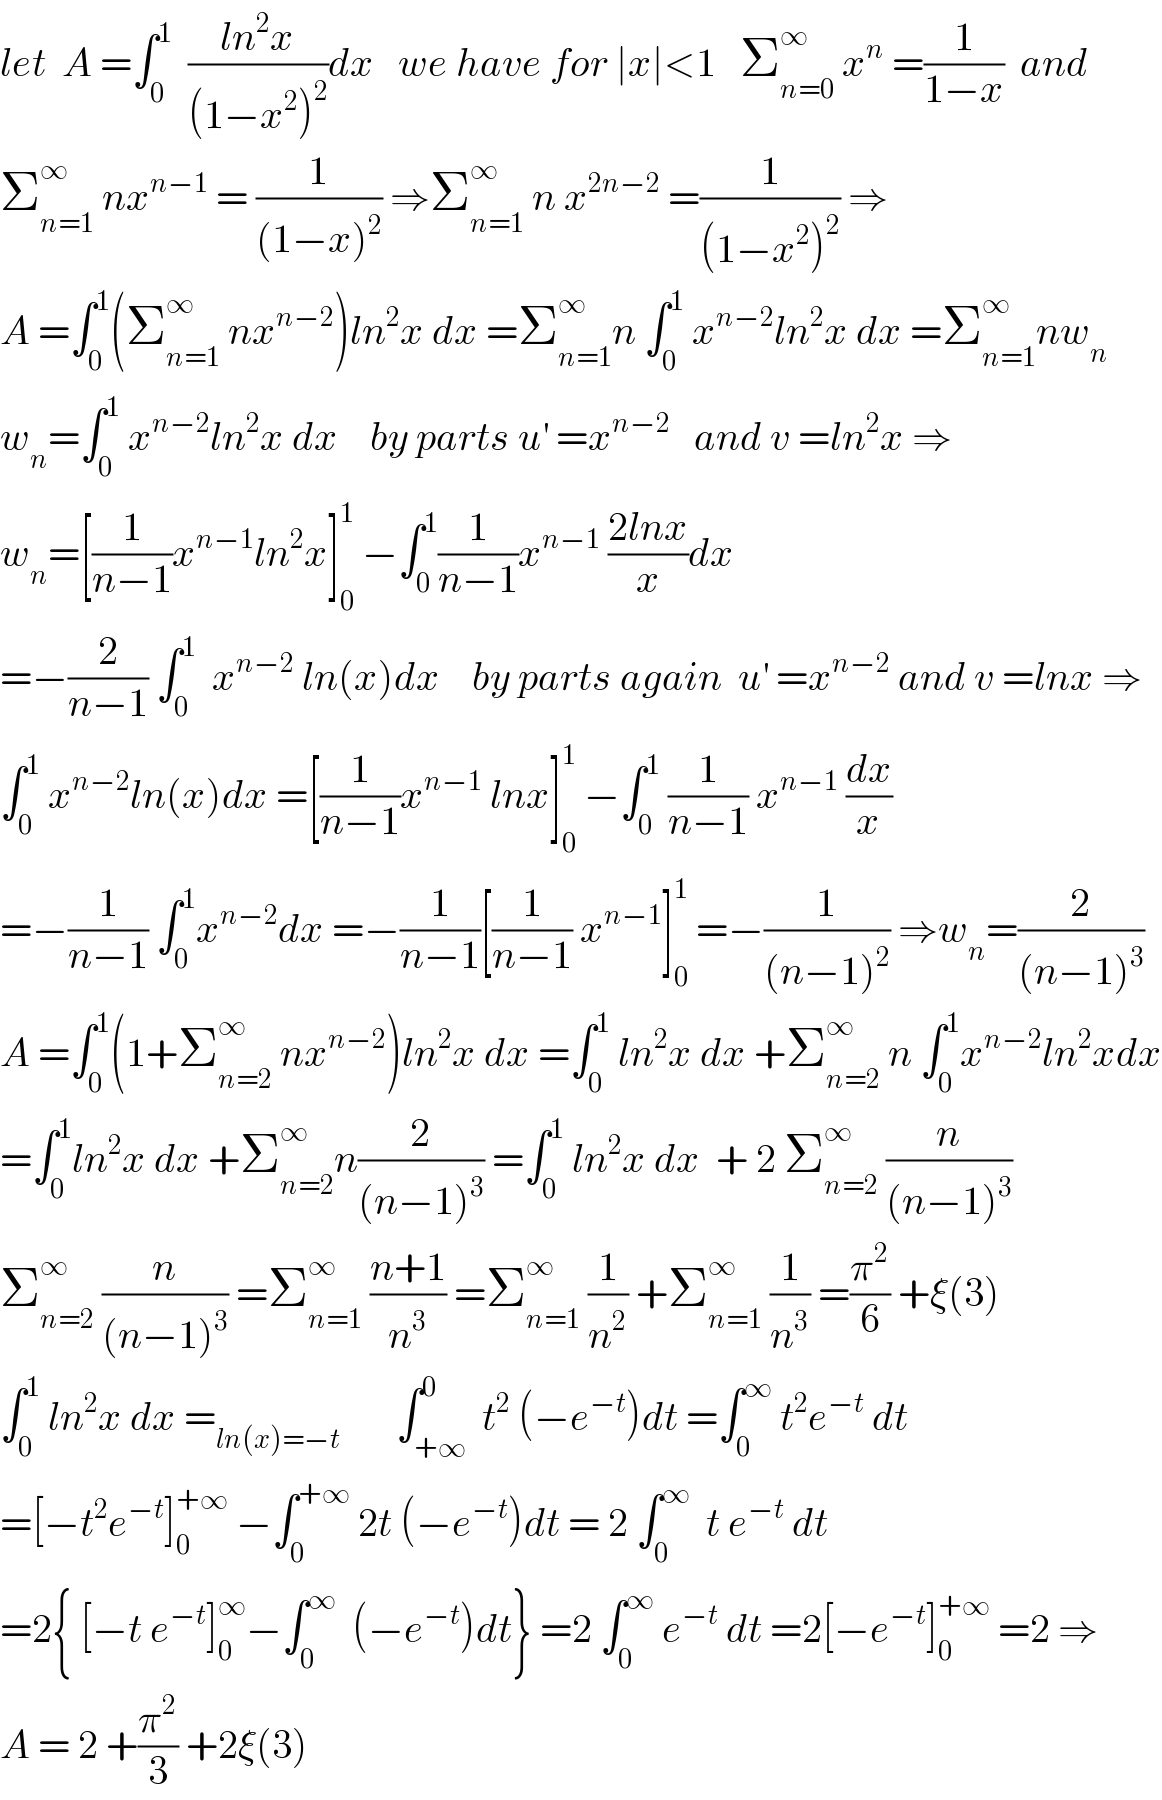 let  A =∫_0 ^1   ((ln^2 x)/((1−x^2 )^2 ))dx   we have for ∣x∣<1   Σ_(n=0) ^∞  x^n  =(1/(1−x))  and  Σ_(n=1) ^∞  nx^(n−1)  = (1/((1−x)^2 )) ⇒Σ_(n=1) ^∞  n x^(2n−2)  =(1/((1−x^2 )^2 )) ⇒  A =∫_0 ^1 (Σ_(n=1) ^∞  nx^(n−2) )ln^2 x dx =Σ_(n=1) ^∞ n ∫_0 ^1  x^(n−2) ln^2 x dx =Σ_(n=1) ^∞ nw_n   w_n =∫_0 ^1  x^(n−2) ln^2 x dx    by parts u^′  =x^(n−2)    and v =ln^2 x ⇒  w_n =[(1/(n−1))x^(n−1) ln^2 x]_0 ^1  −∫_0 ^1 (1/(n−1))x^(n−1)  ((2lnx)/x)dx  =−(2/(n−1)) ∫_0 ^1   x^(n−2)  ln(x)dx    by parts again  u^′  =x^(n−2)  and v =lnx ⇒  ∫_0 ^1  x^(n−2) ln(x)dx =[(1/(n−1))x^(n−1)  lnx]_0 ^1  −∫_0 ^1  (1/(n−1)) x^(n−1)  (dx/x)  =−(1/(n−1)) ∫_0 ^1 x^(n−2) dx =−(1/(n−1))[(1/(n−1)) x^(n−1) ]_0 ^1  =−(1/((n−1)^2 )) ⇒w_n =(2/((n−1)^3 ))  A =∫_0 ^1 (1+Σ_(n=2) ^∞  nx^(n−2) )ln^2 x dx =∫_0 ^1  ln^2 x dx +Σ_(n=2) ^∞  n ∫_0 ^1 x^(n−2) ln^2 xdx  =∫_0 ^1 ln^2 x dx +Σ_(n=2) ^∞ n(2/((n−1)^3 )) =∫_0 ^1  ln^2 x dx  + 2 Σ_(n=2) ^∞  (n/((n−1)^3 ))  Σ_(n=2) ^∞  (n/((n−1)^3 )) =Σ_(n=1) ^∞  ((n+1)/n^3 ) =Σ_(n=1) ^∞  (1/n^2 ) +Σ_(n=1) ^∞  (1/n^3 ) =(π^2 /6) +ξ(3)  ∫_0 ^1  ln^2 x dx =_(ln(x)=−t)        ∫_(+∞) ^0  t^2  (−e^(−t) )dt =∫_0 ^∞  t^2 e^(−t)  dt  =[−t^2 e^(−t) ]_0 ^(+∞)  −∫_0 ^(+∞)  2t (−e^(−t) )dt = 2 ∫_0 ^∞   t e^(−t)  dt  =2{ [−t e^(−t) ]_0 ^∞ −∫_0 ^∞   (−e^(−t) )dt} =2 ∫_0 ^∞  e^(−t)  dt =2[−e^(−t) ]_0 ^(+∞)  =2 ⇒   A = 2 +(π^2 /3) +2ξ(3)   